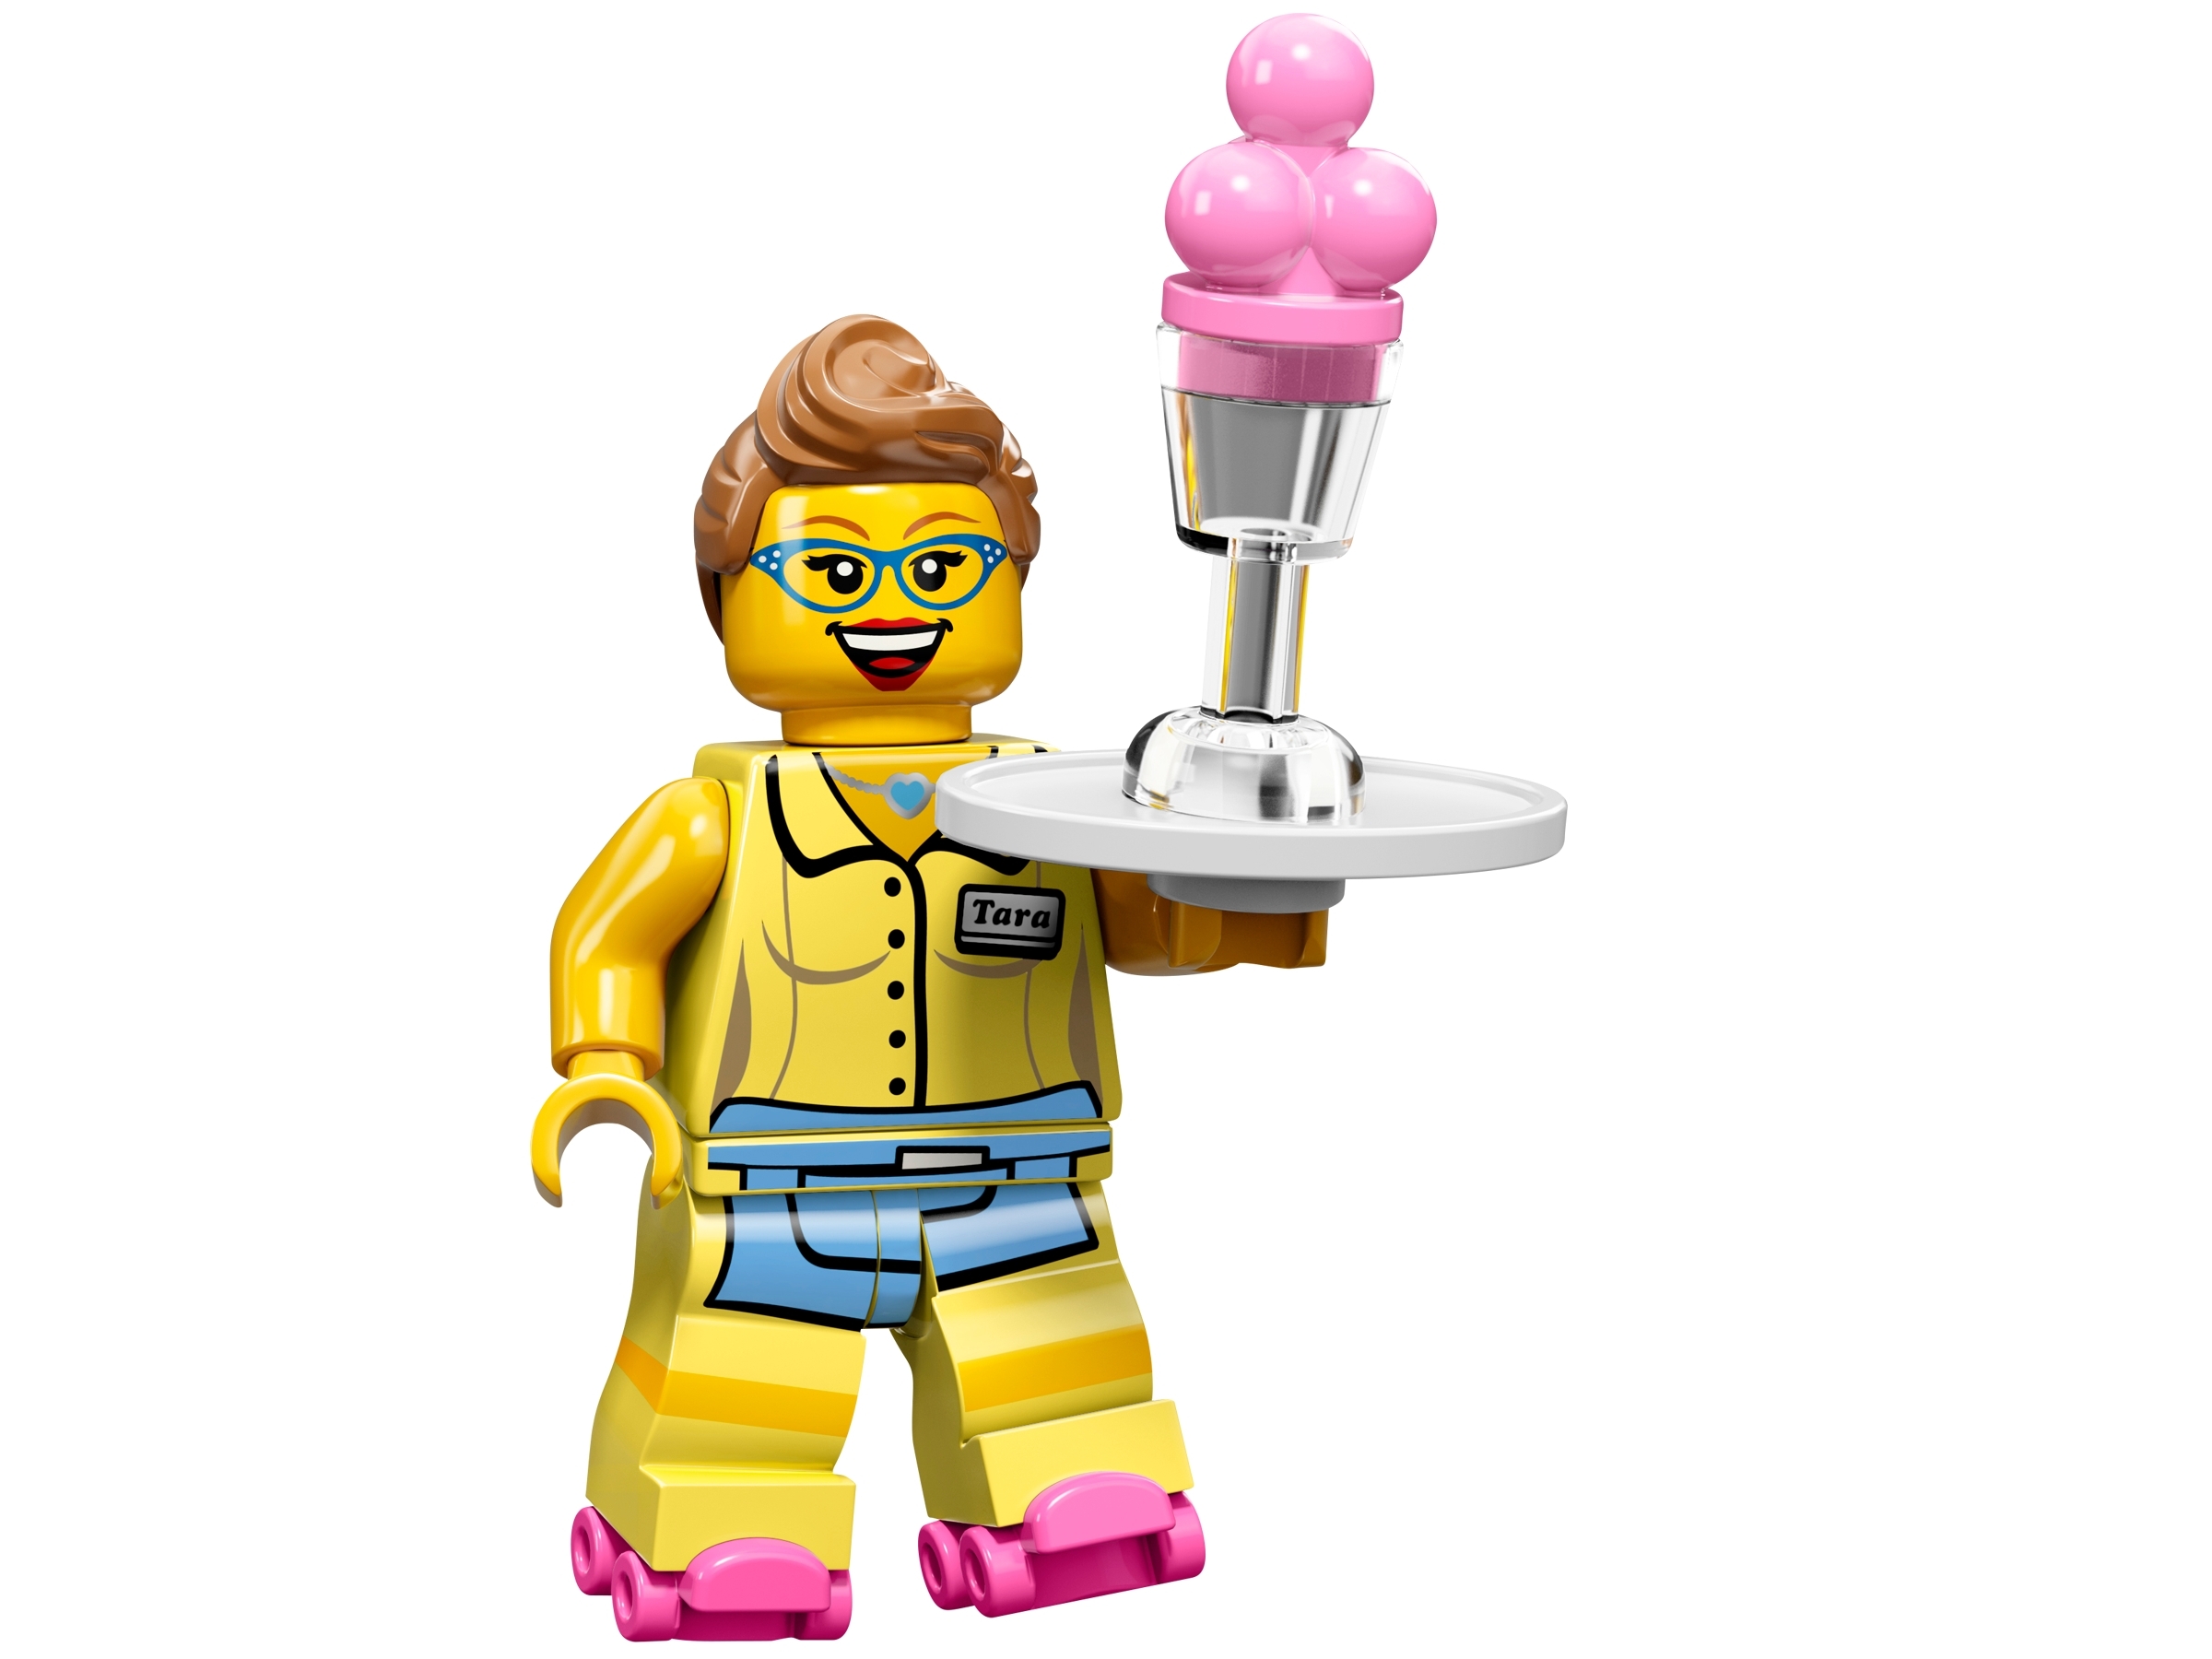  LEGO Minifigures Series 11, Yeti : Toys & Games